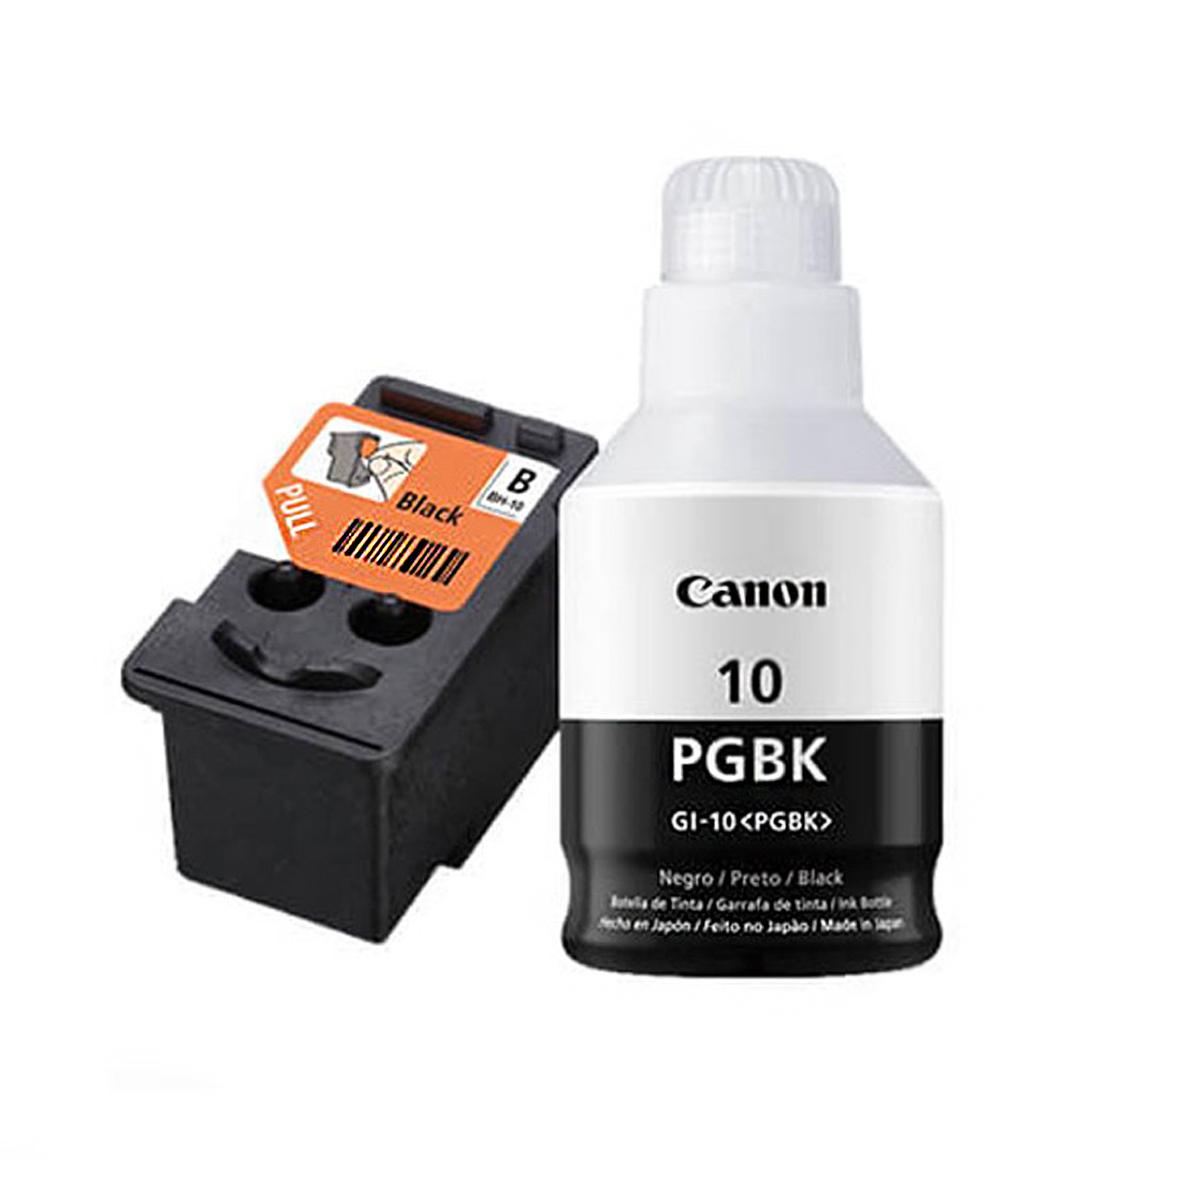 Kit Cabezal de Tinta Canon BH-10 y de Tinta Negra GI-10